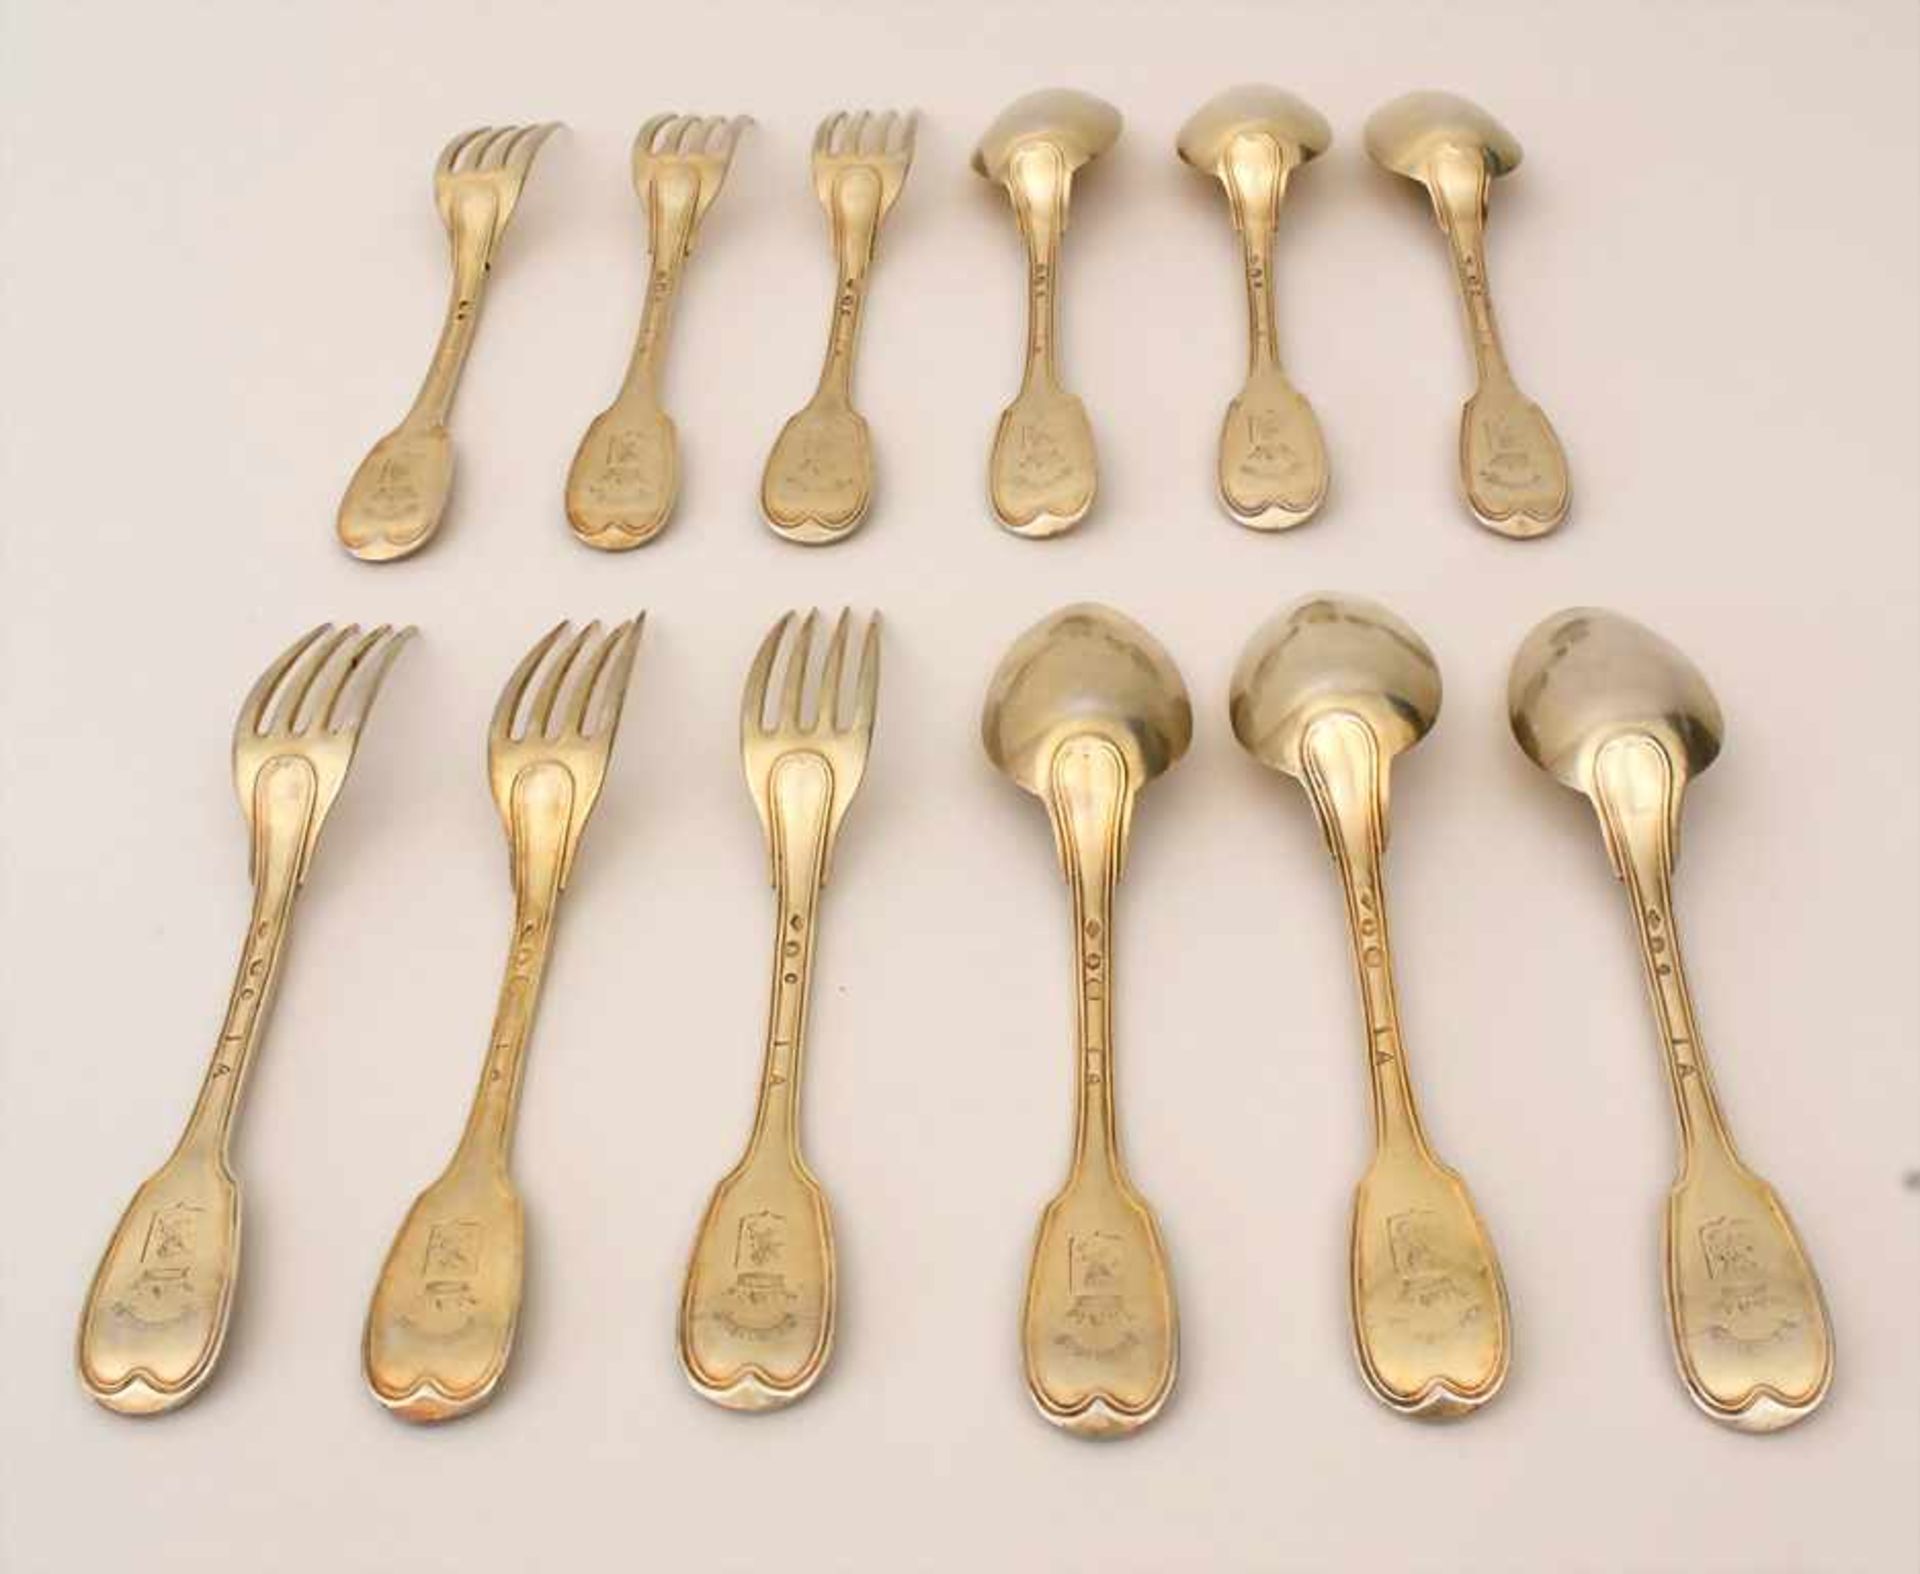 Silberbesteck für 6 Personen / 12 pieces of silver flatware, Paris, 1798-1809Material: Silber 950/ - Bild 2 aus 8